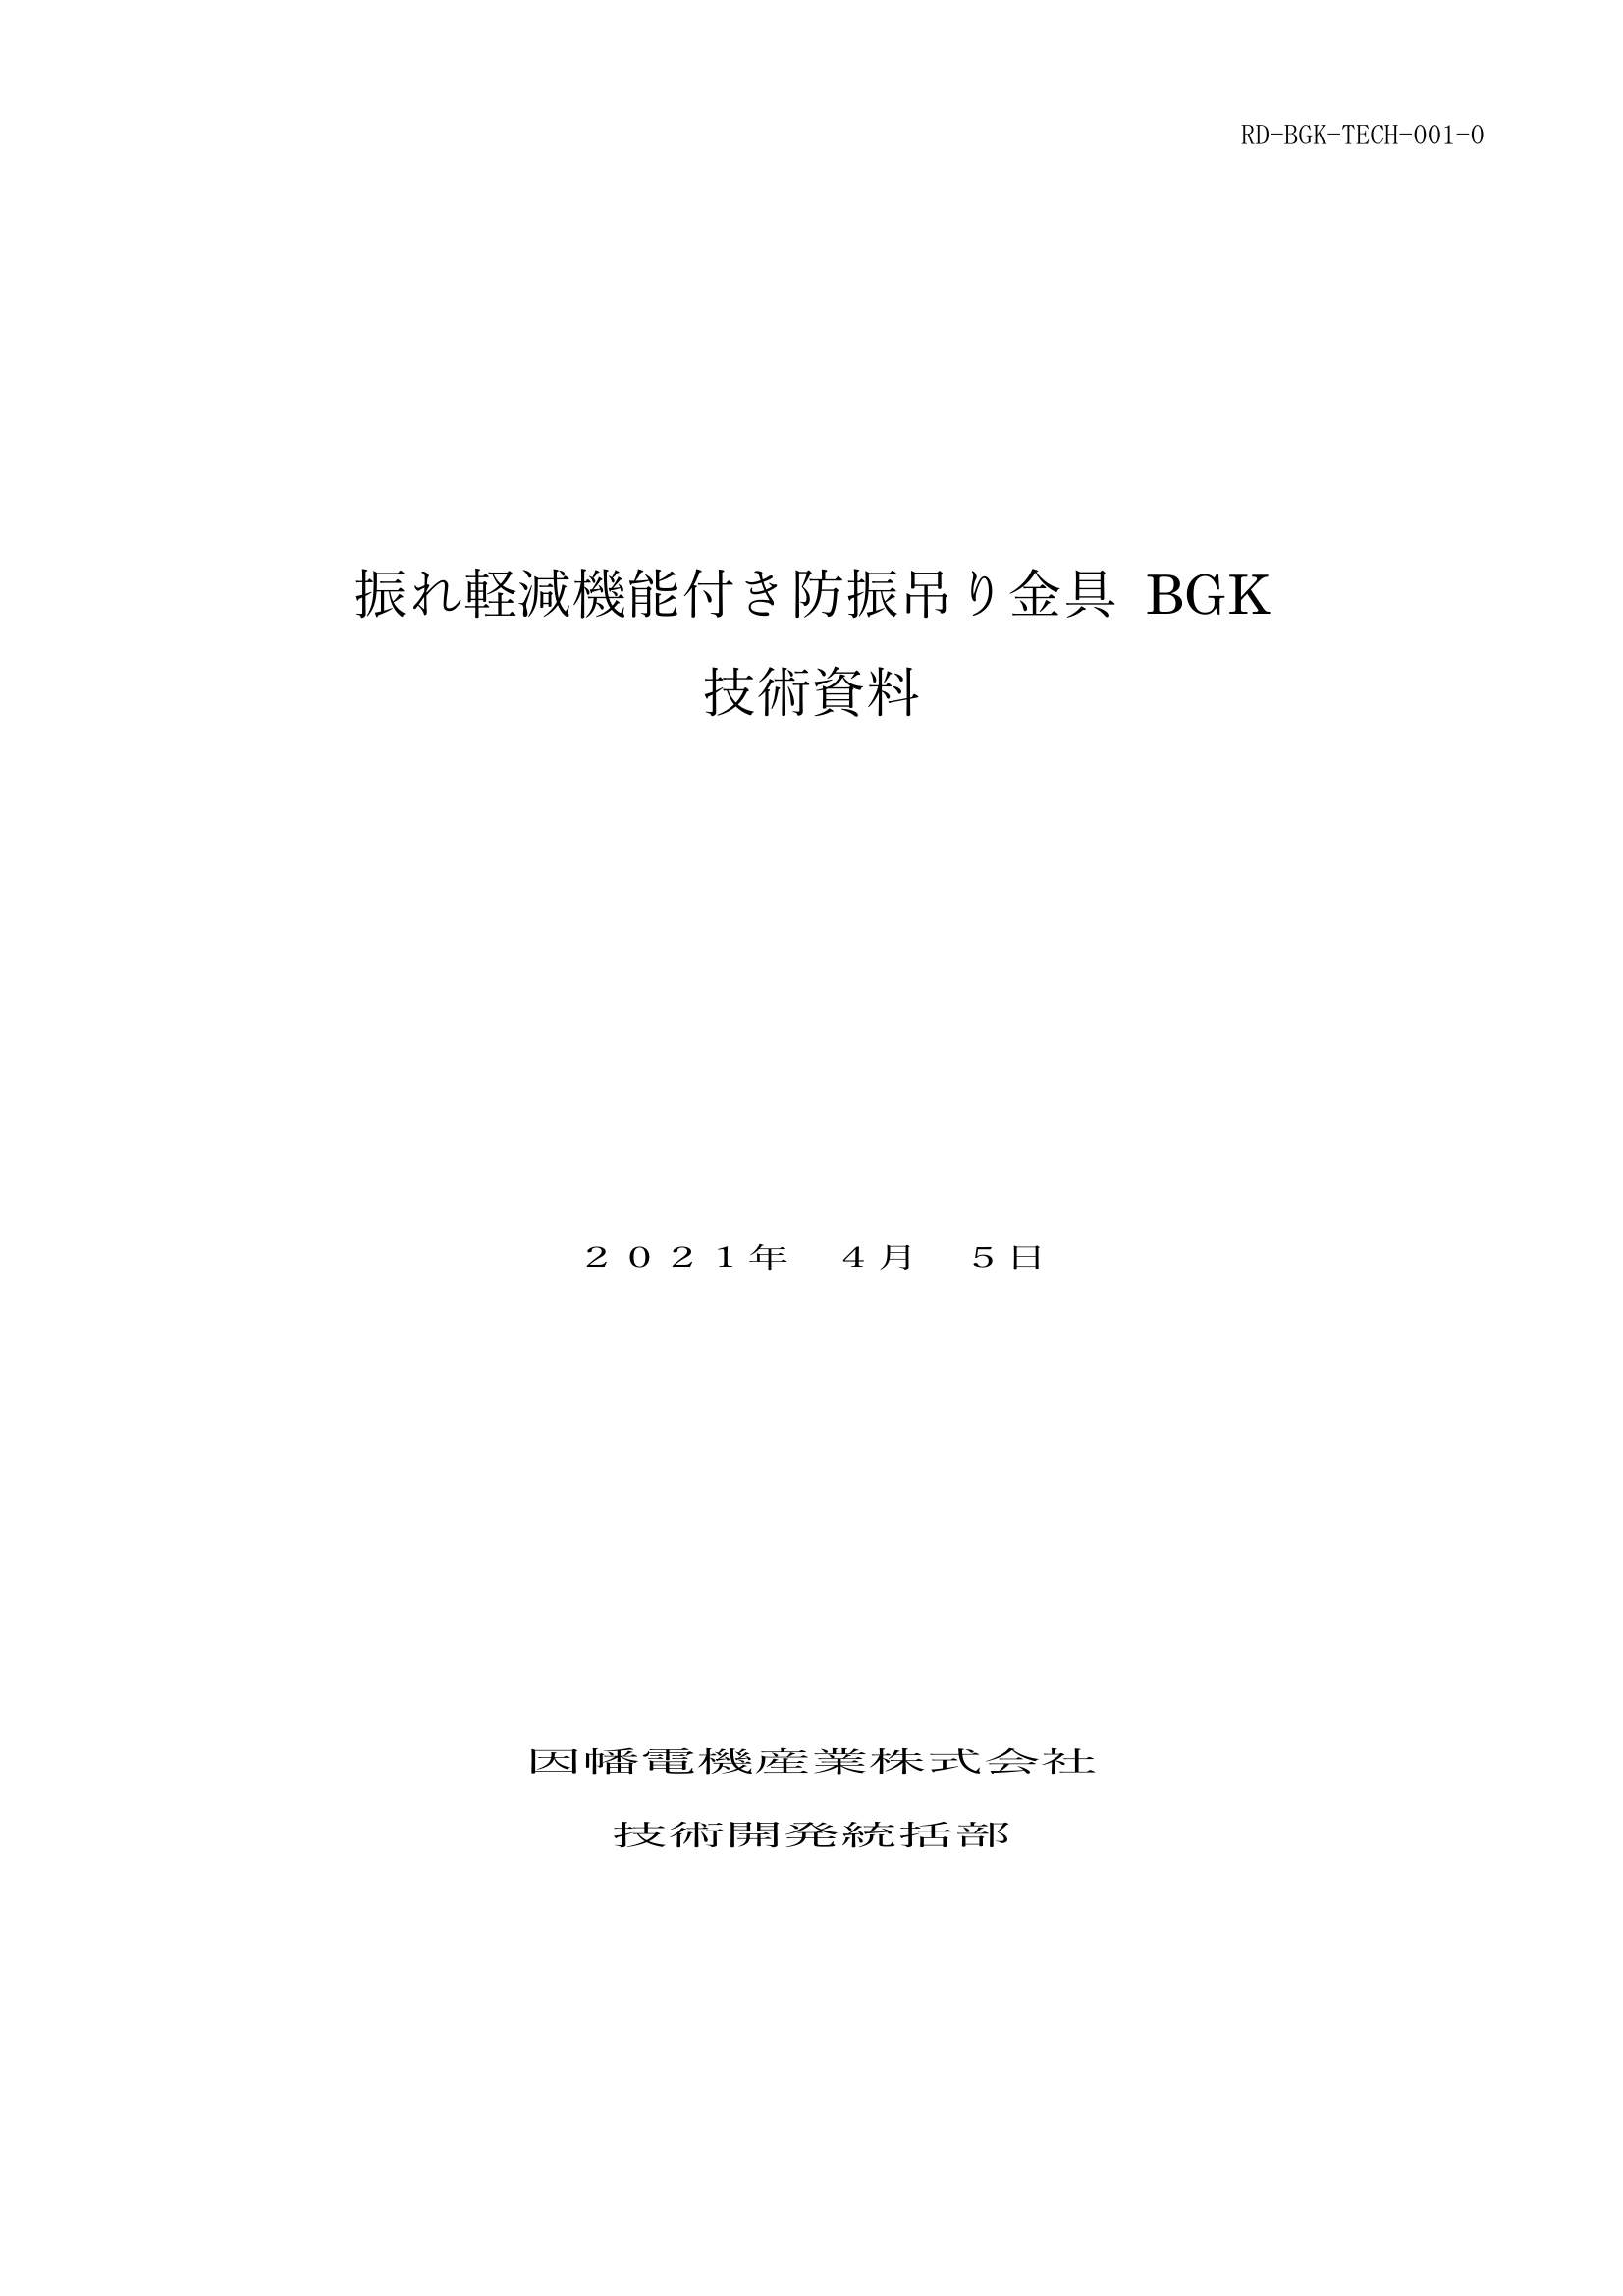 BGK_技術資料_20210405.pdf